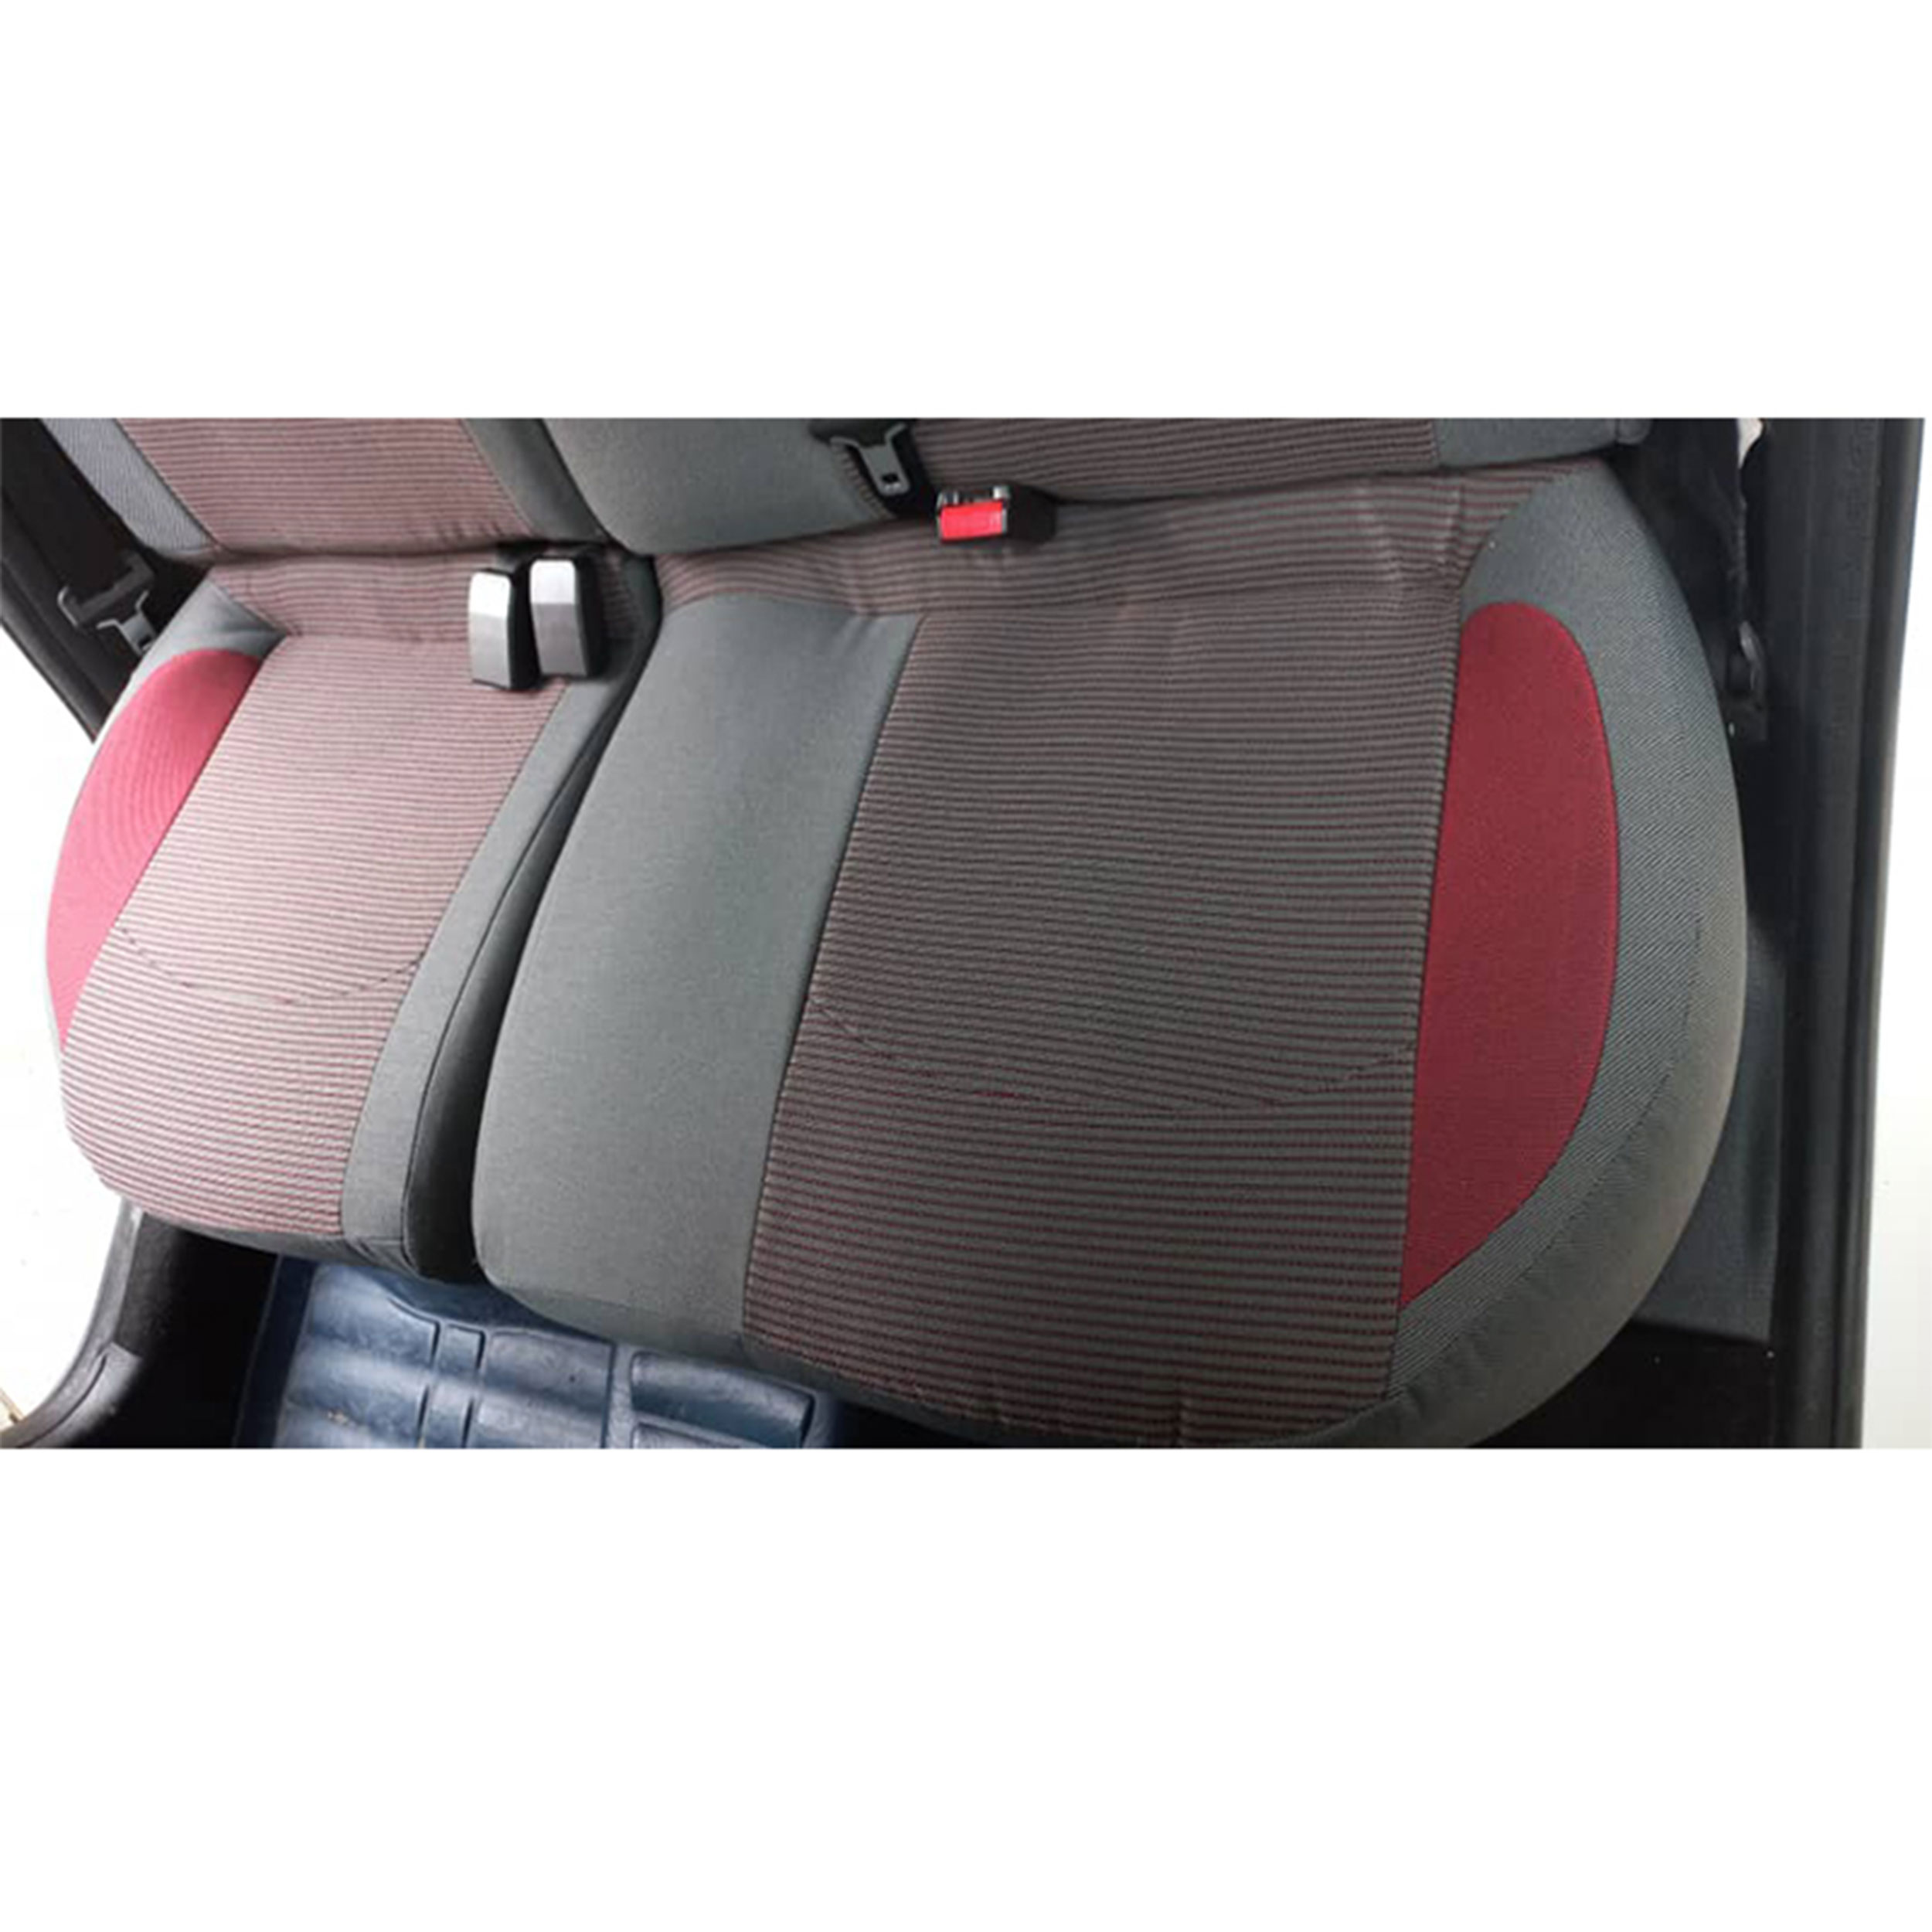 روکش صندلی خودرو هایکو مدل روناک مناسب برای پژو 206 و 207